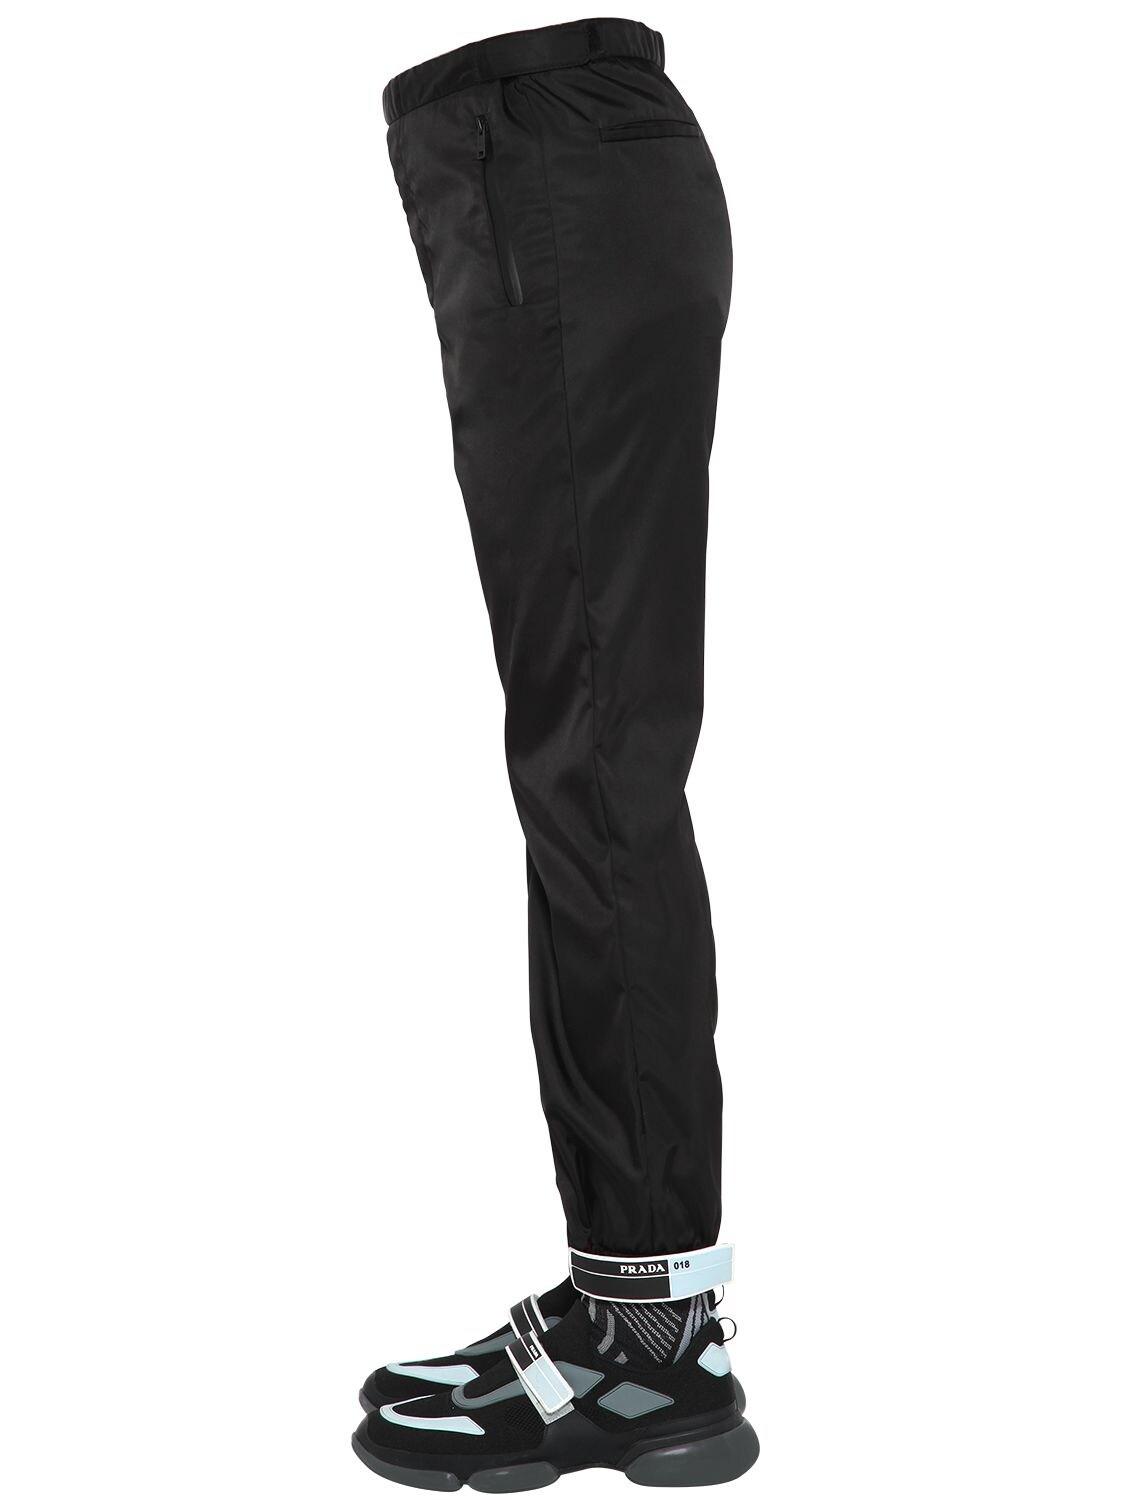 Prada Synthetic Nylon Gabardine Track Pants in Black for Men - Lyst